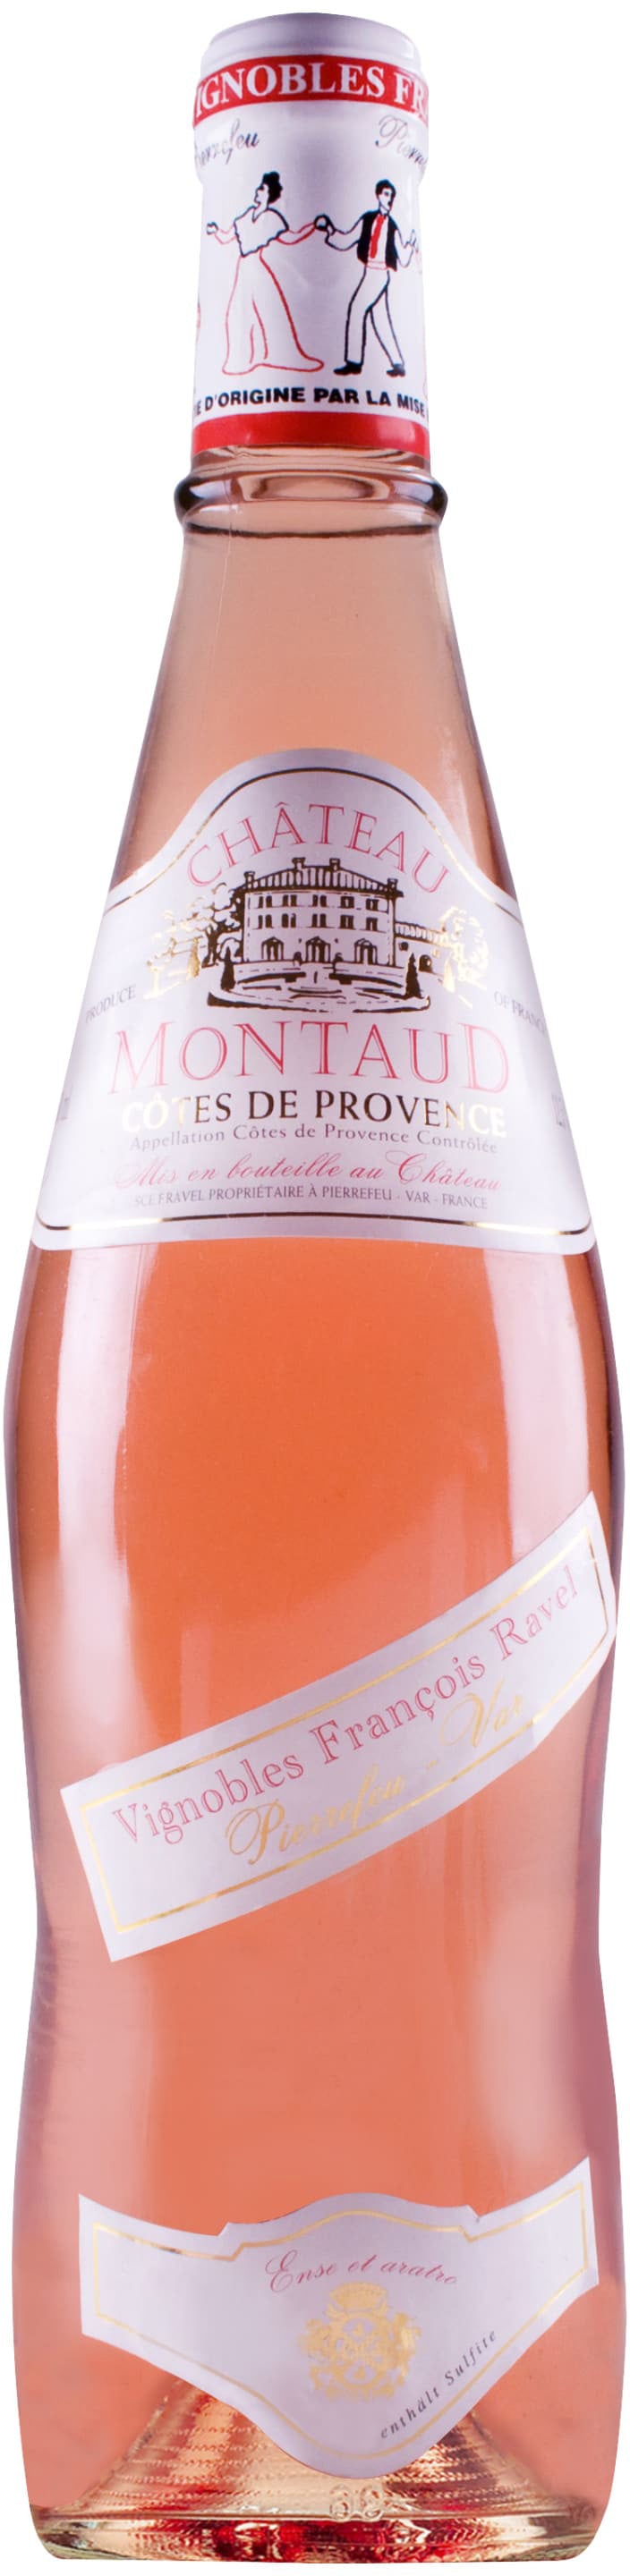 Chateau Montaud Cotes de Provence Rose 2020